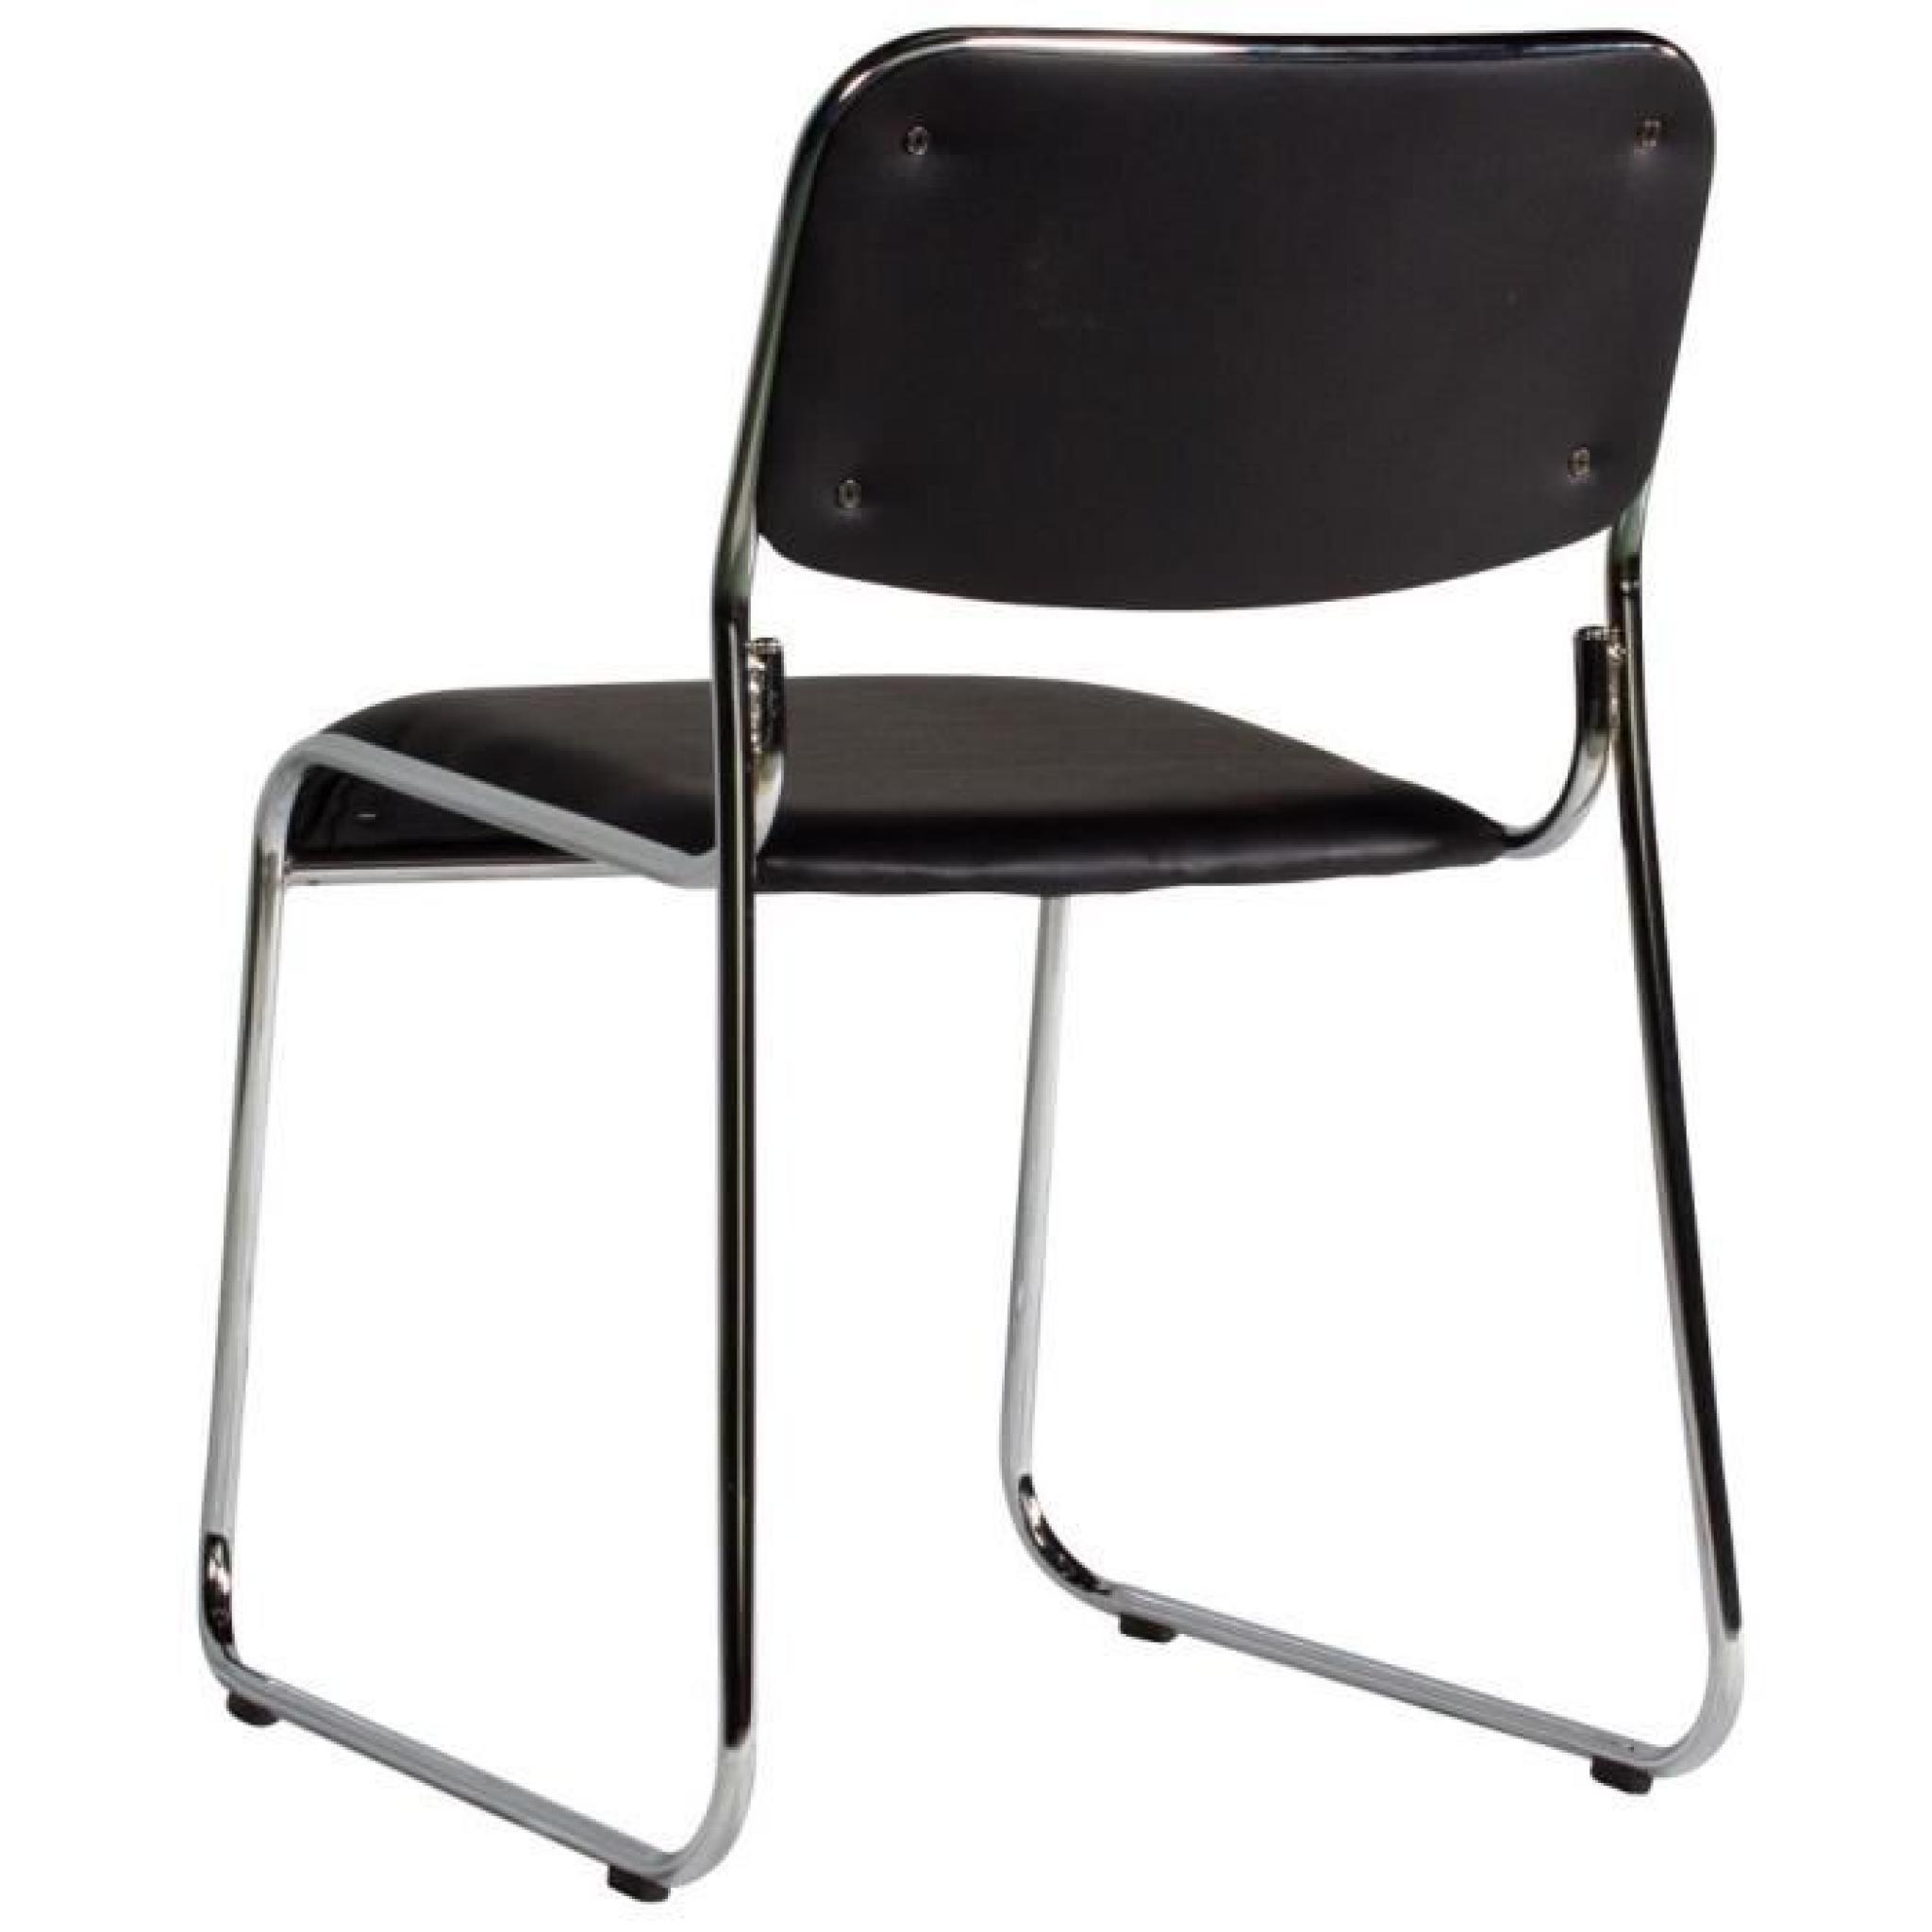 Chaise sans accoudoirs coloris noir moderne pas cher